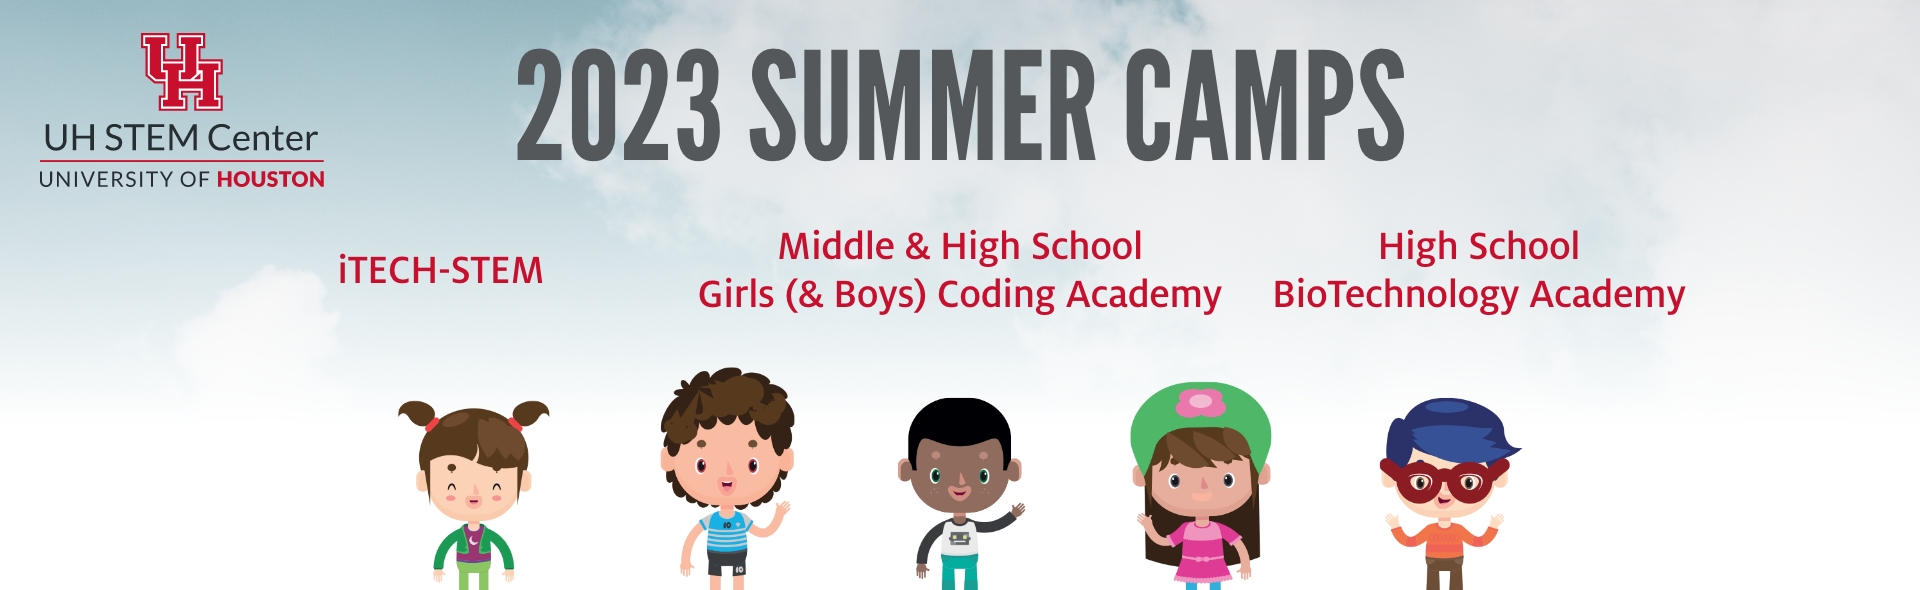 STEM Center Summer Camps